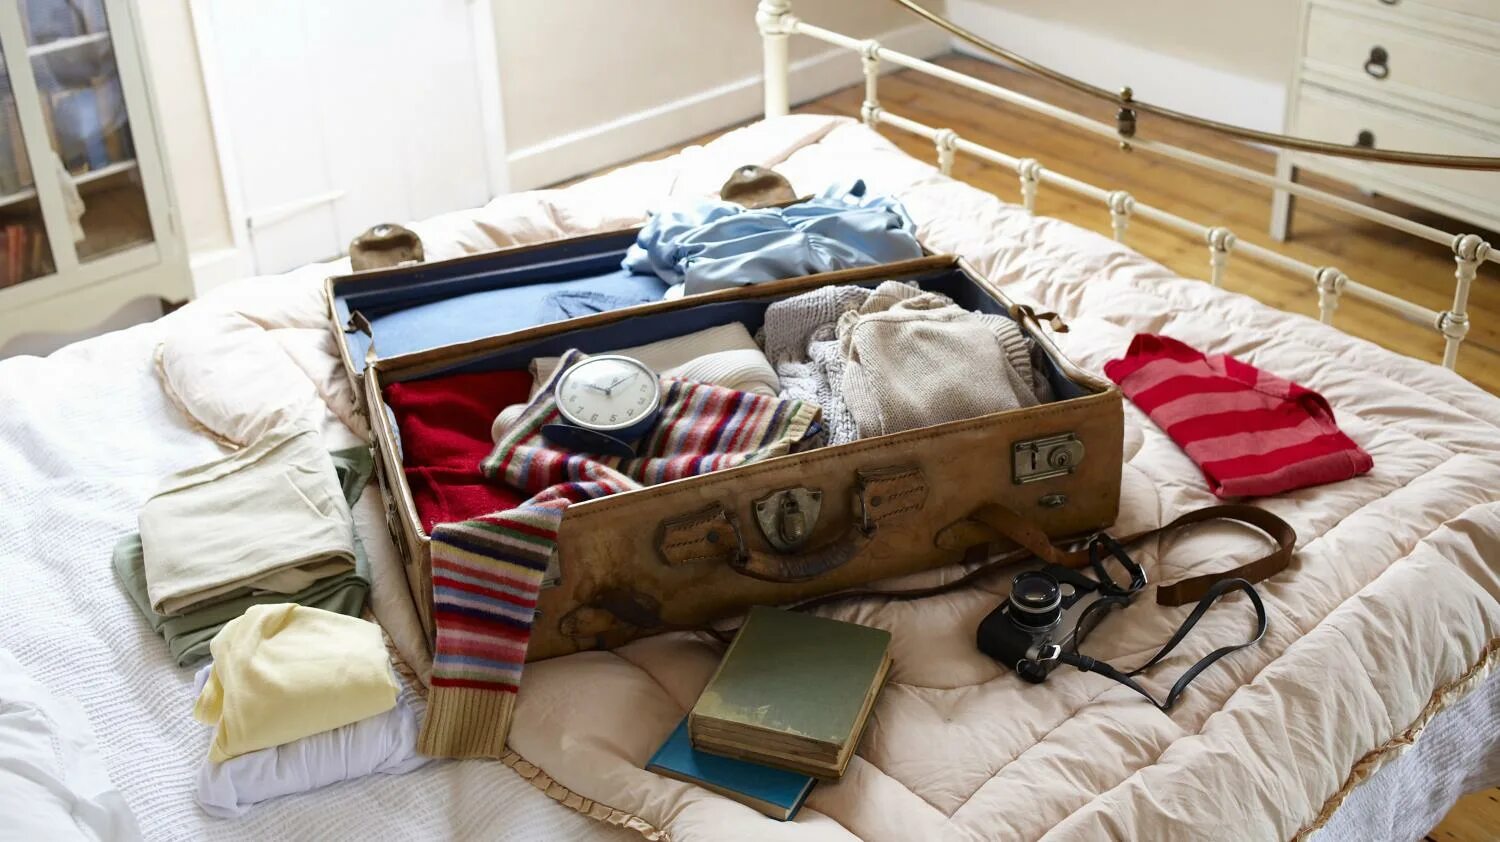 Нужные вещи в квартиру. Вещи в путешествие. Чемодан с вещами. Собранные чемоданы с вещами. Вещи на кровати.